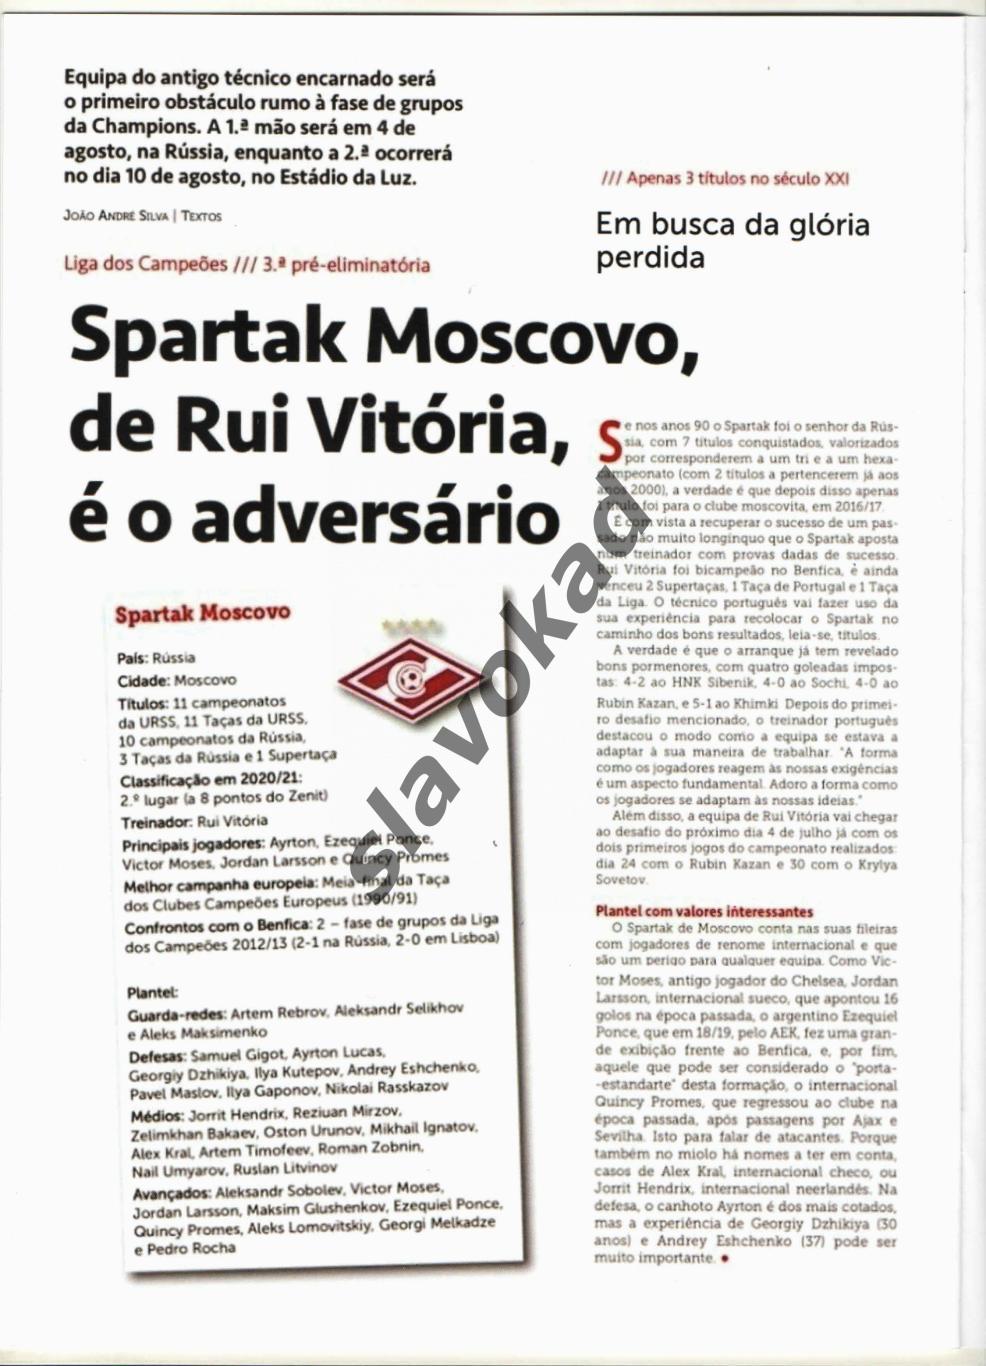 Бенфика Португалия - Спартак Москва 2021 - официальное издание O BENFICA 1